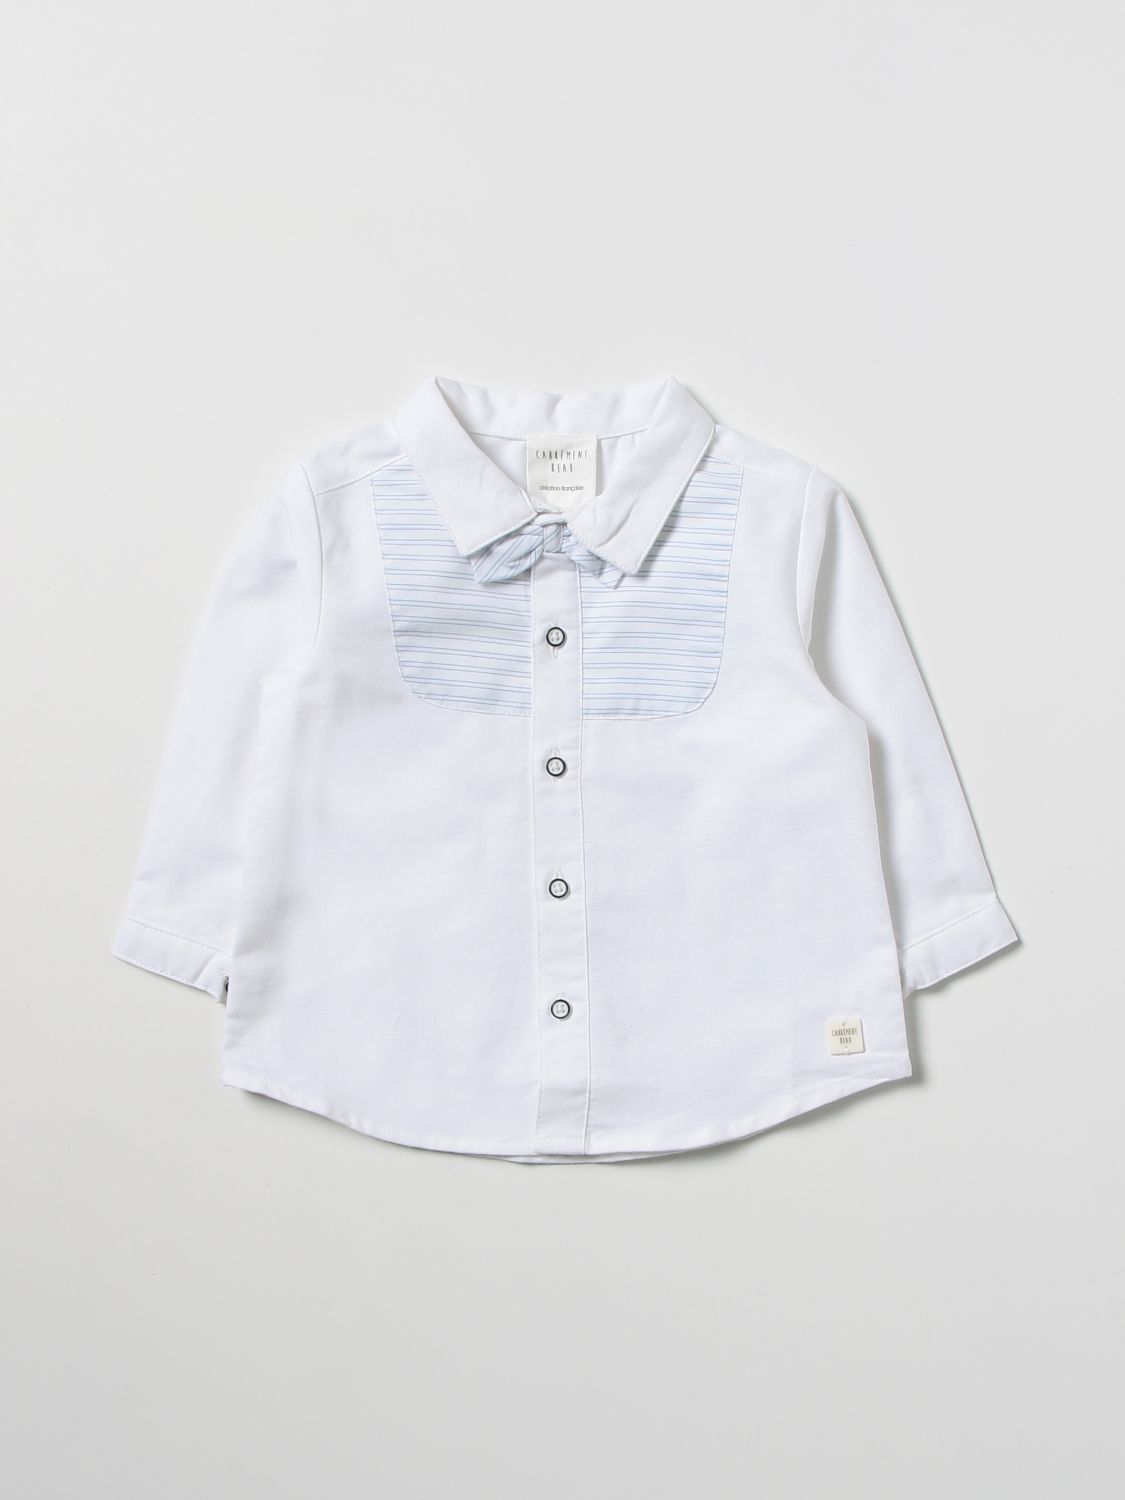 Carrèment Beau Babies' Shirt Carrément Beau Kids Color White